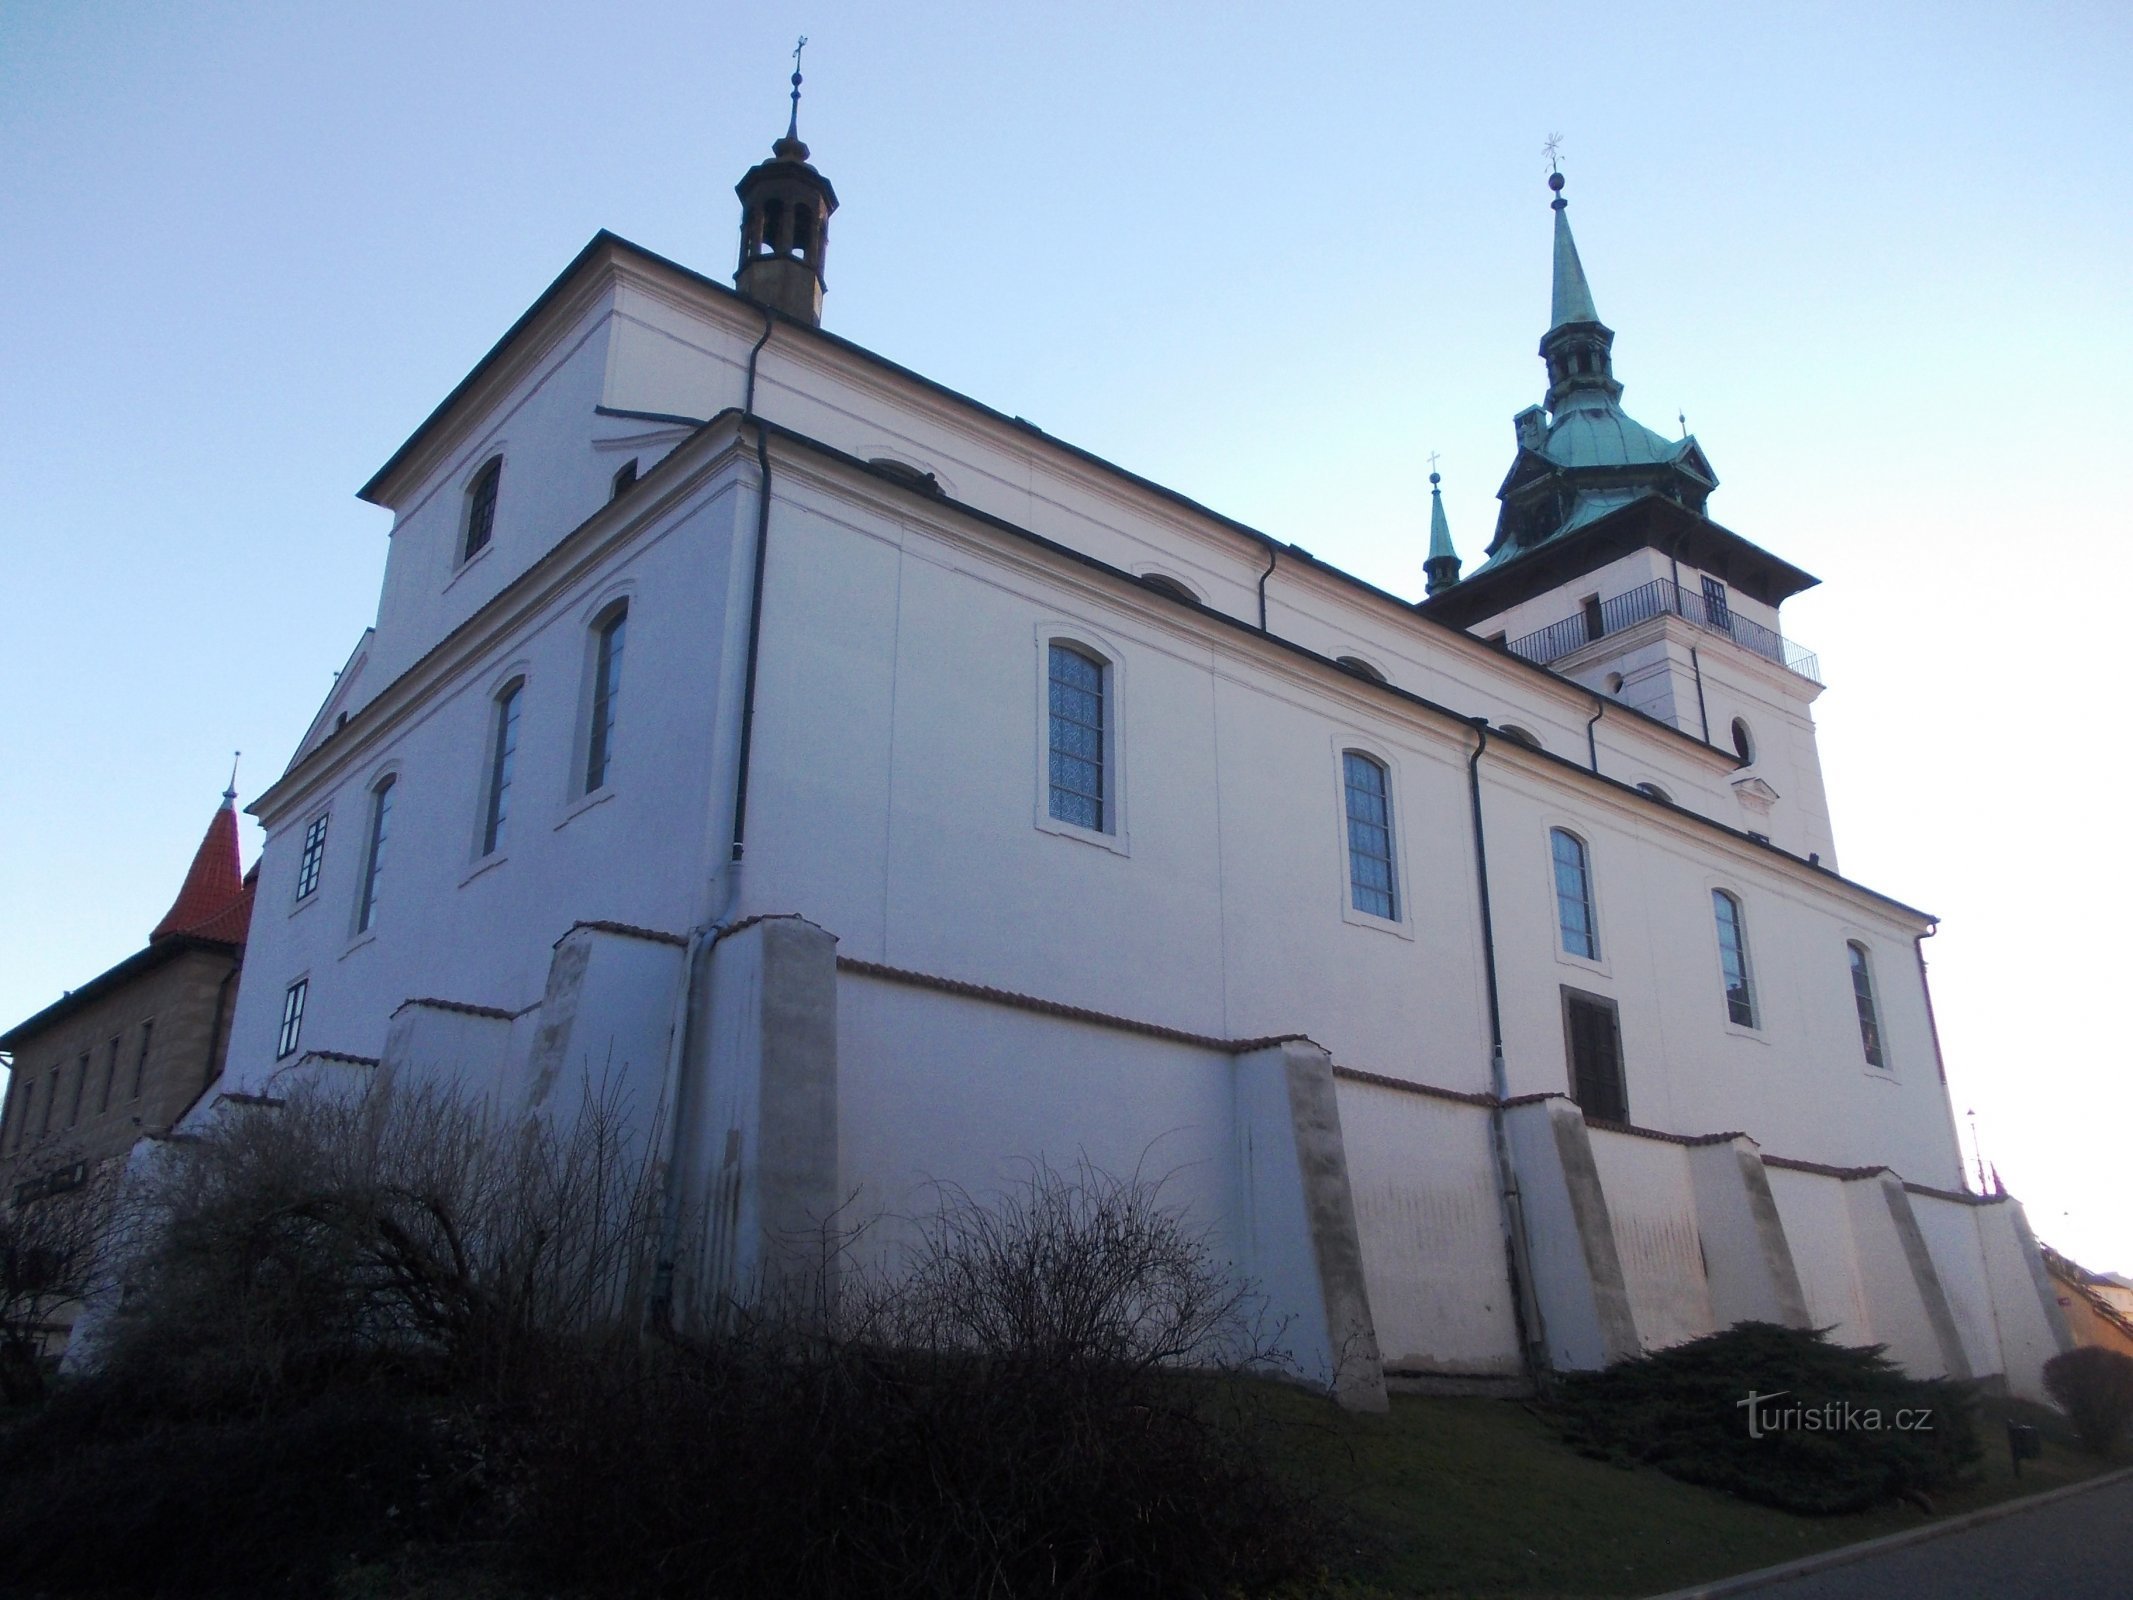 kerk van st. Johannes de Doper